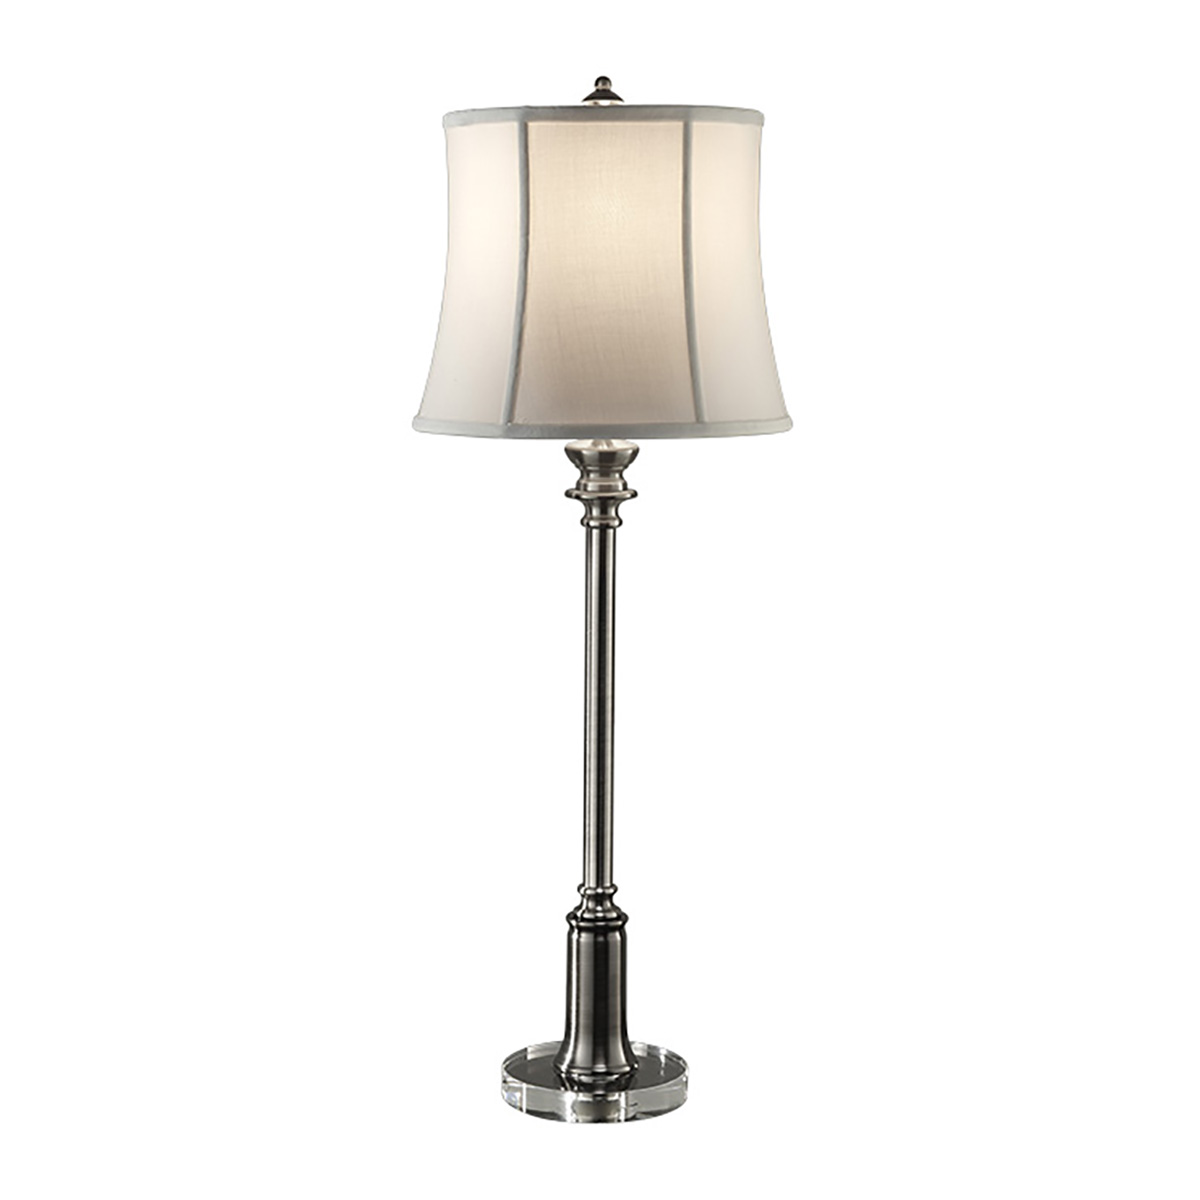 Настольная лампа FE-STATEROOM-BL-AN, Настольные лампы Классический | Никель античный | Прихожая, спальня, гостиная, столовая.